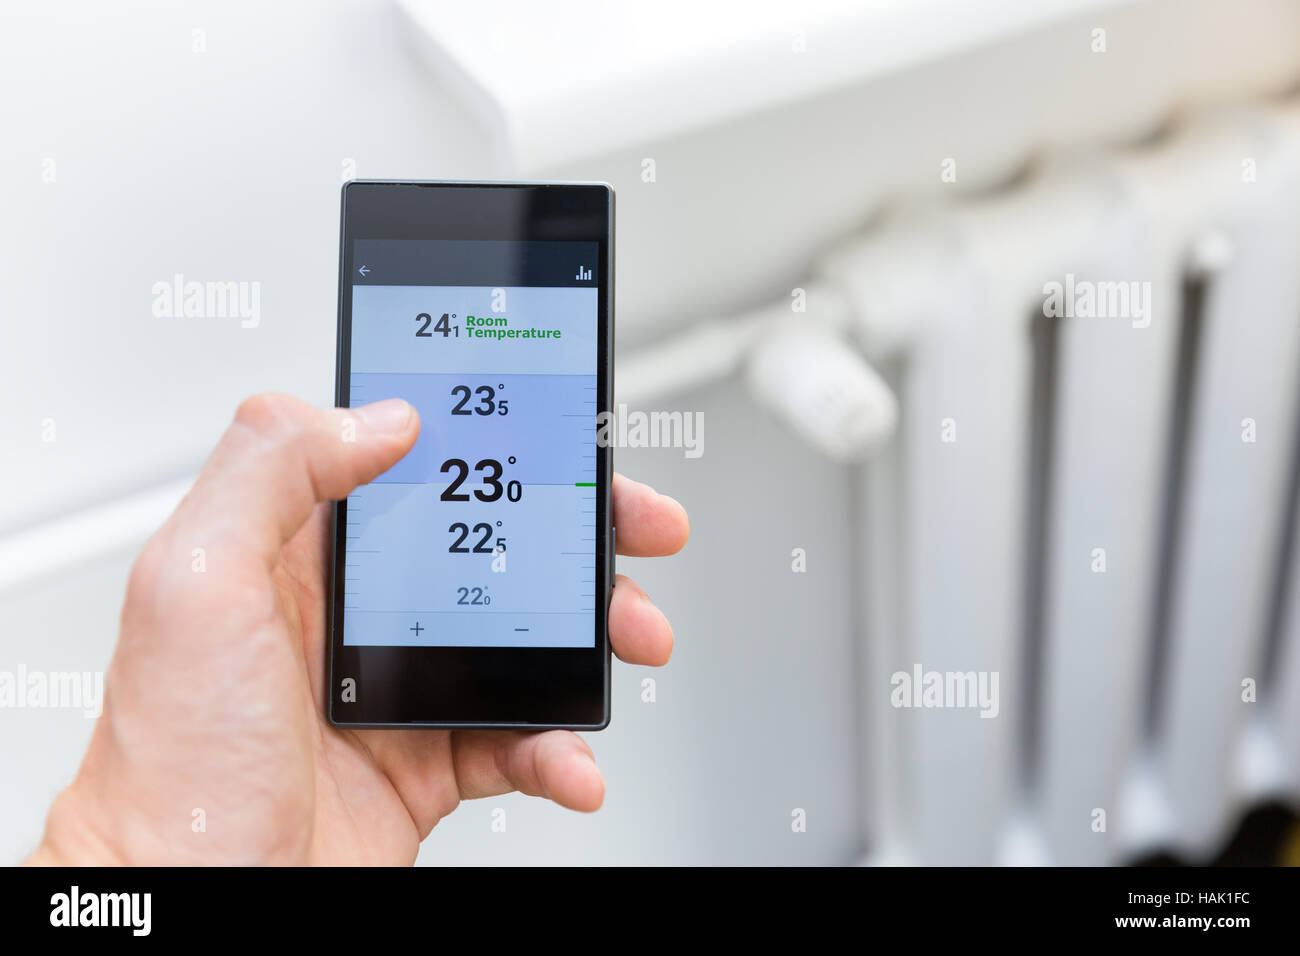 Maison moderne chauffage système de contrôle de température avec smart phone Banque D'Images